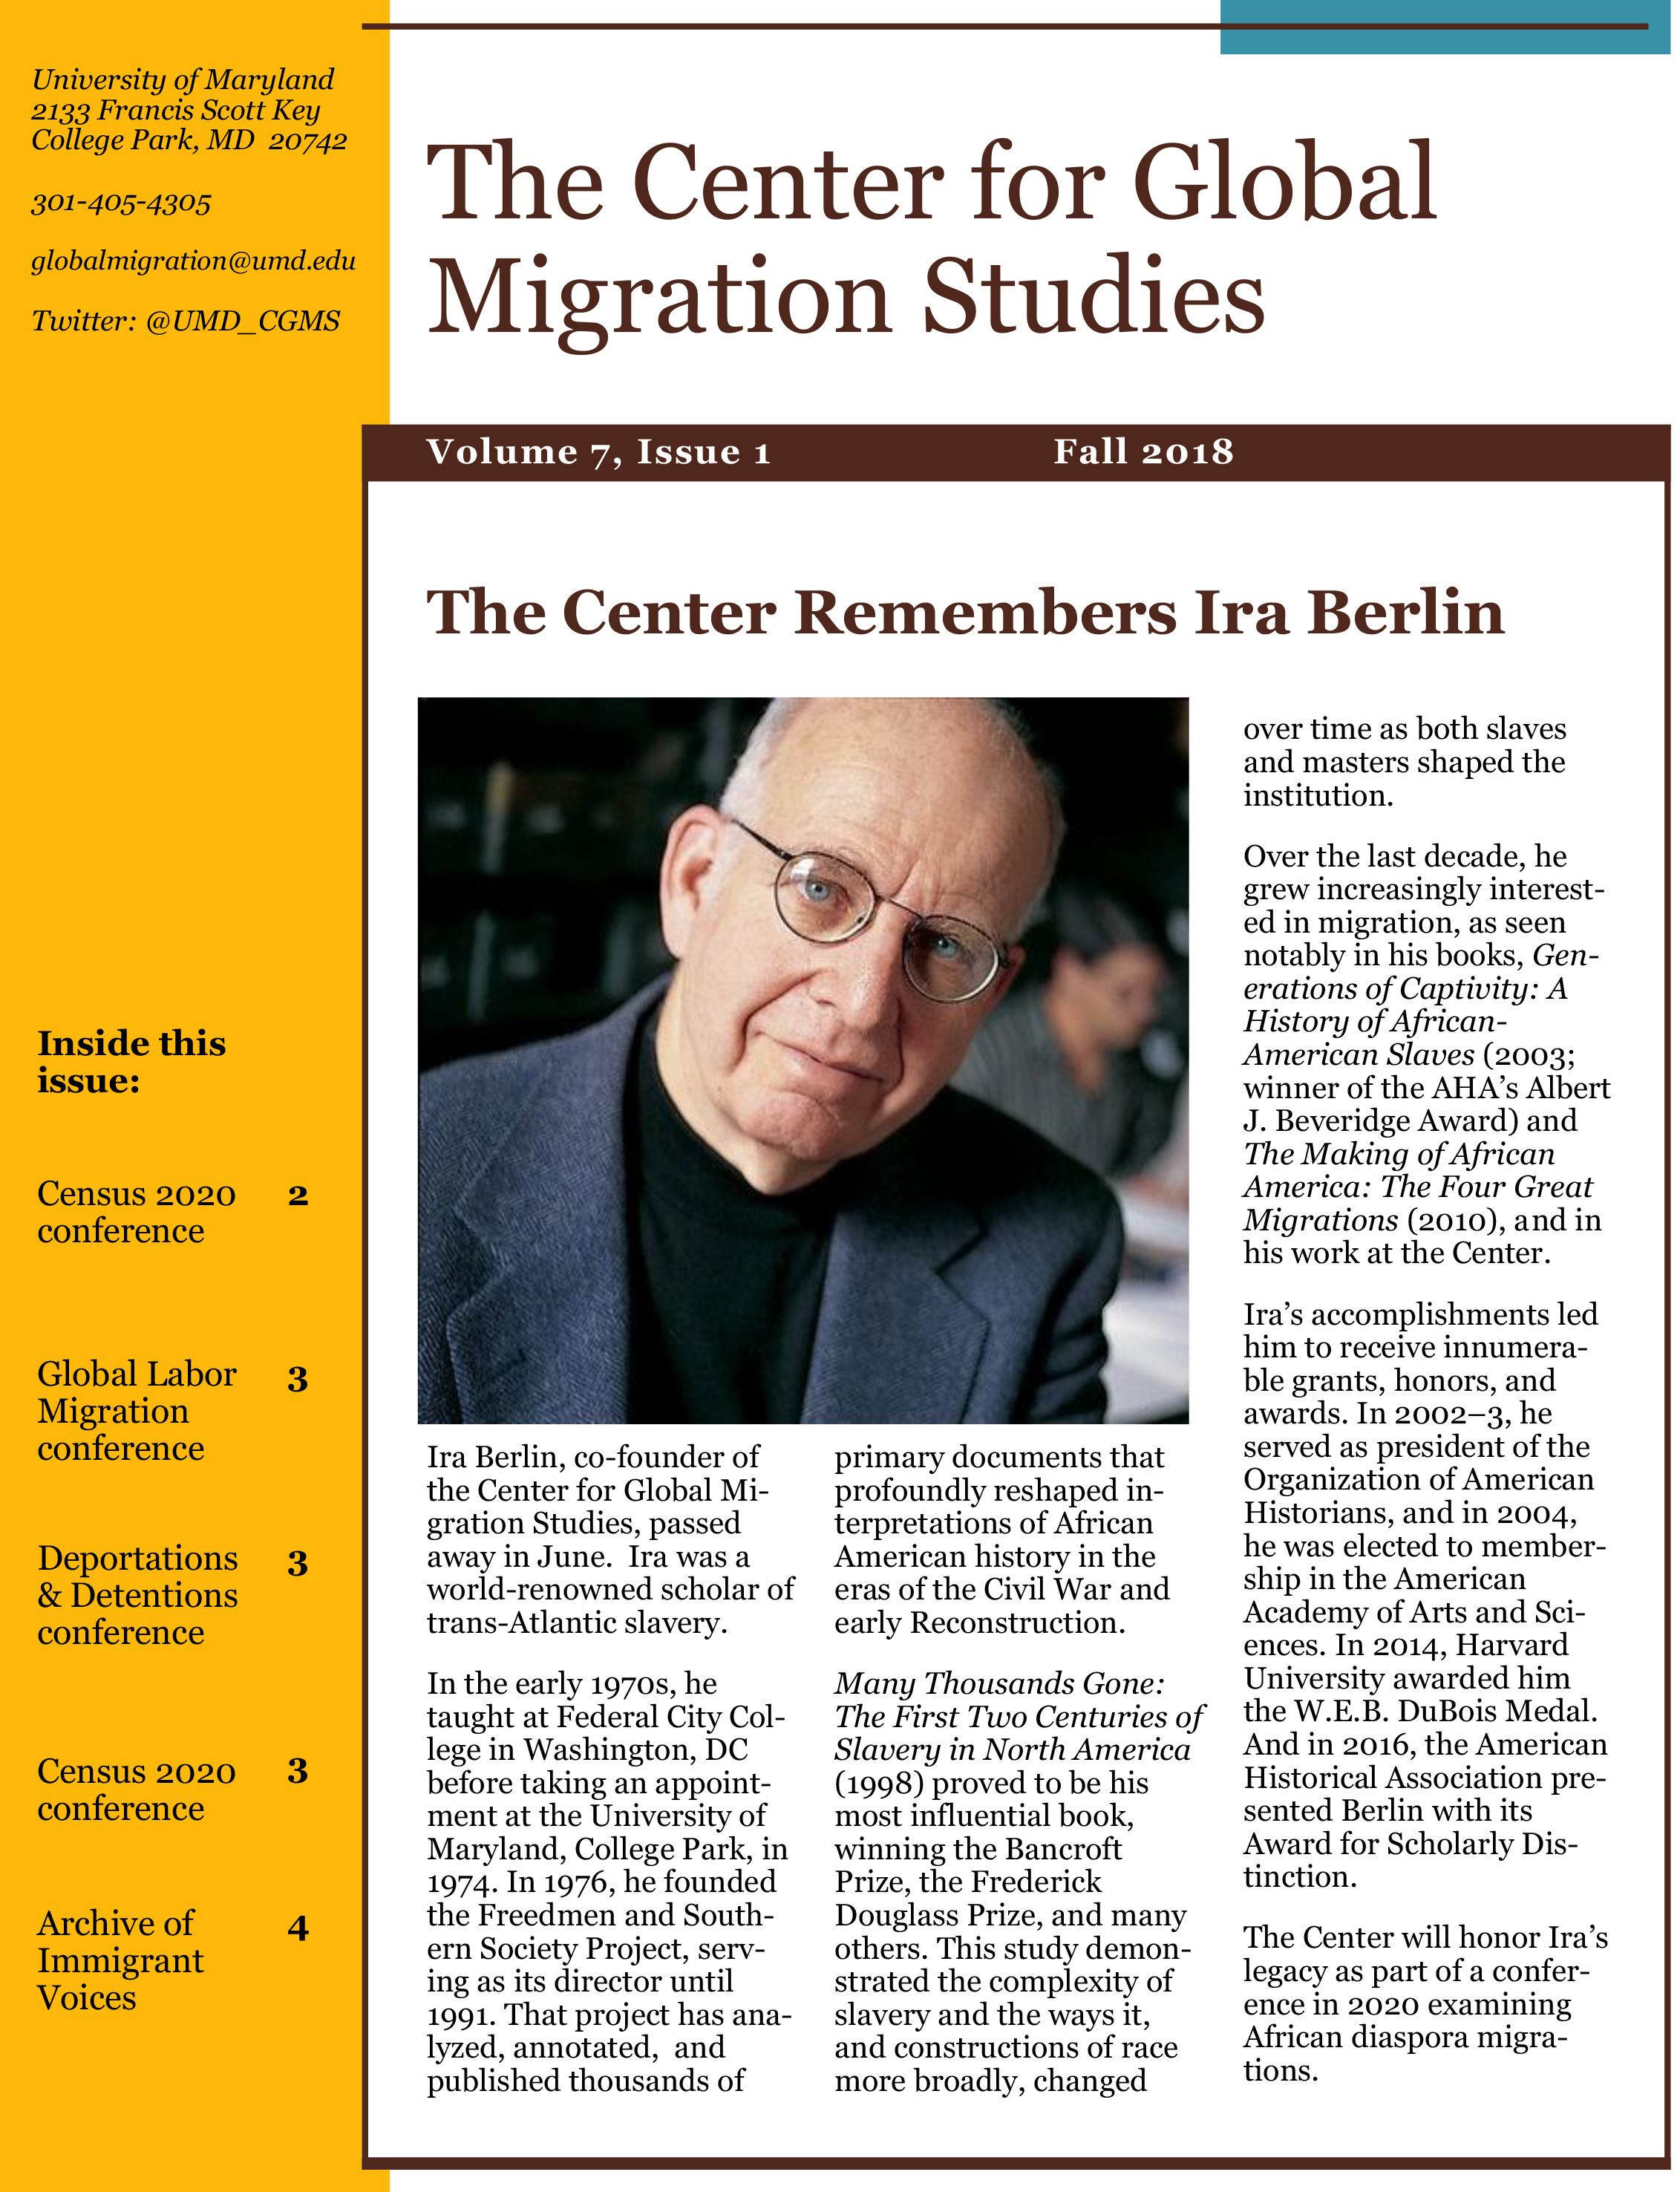 Center for Global Migration Studies Newsletter Fall 2018